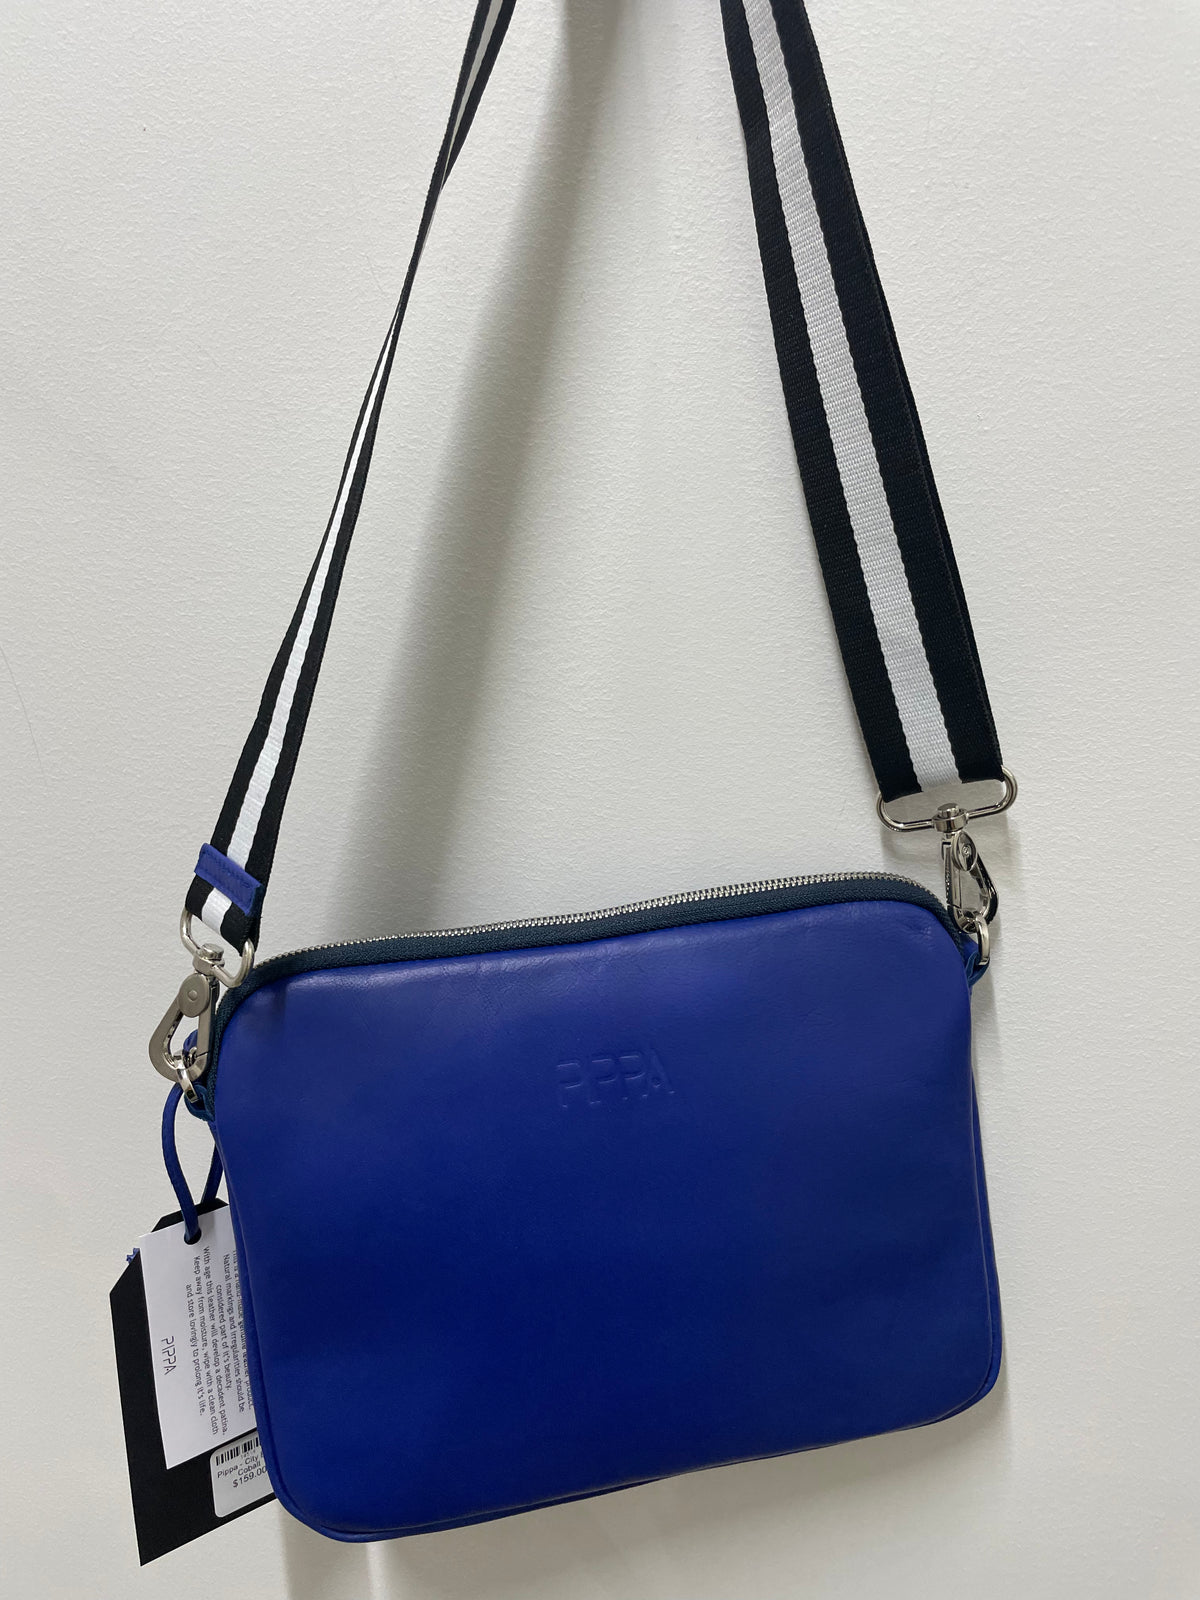 Pippa - City Bag - Cobalt